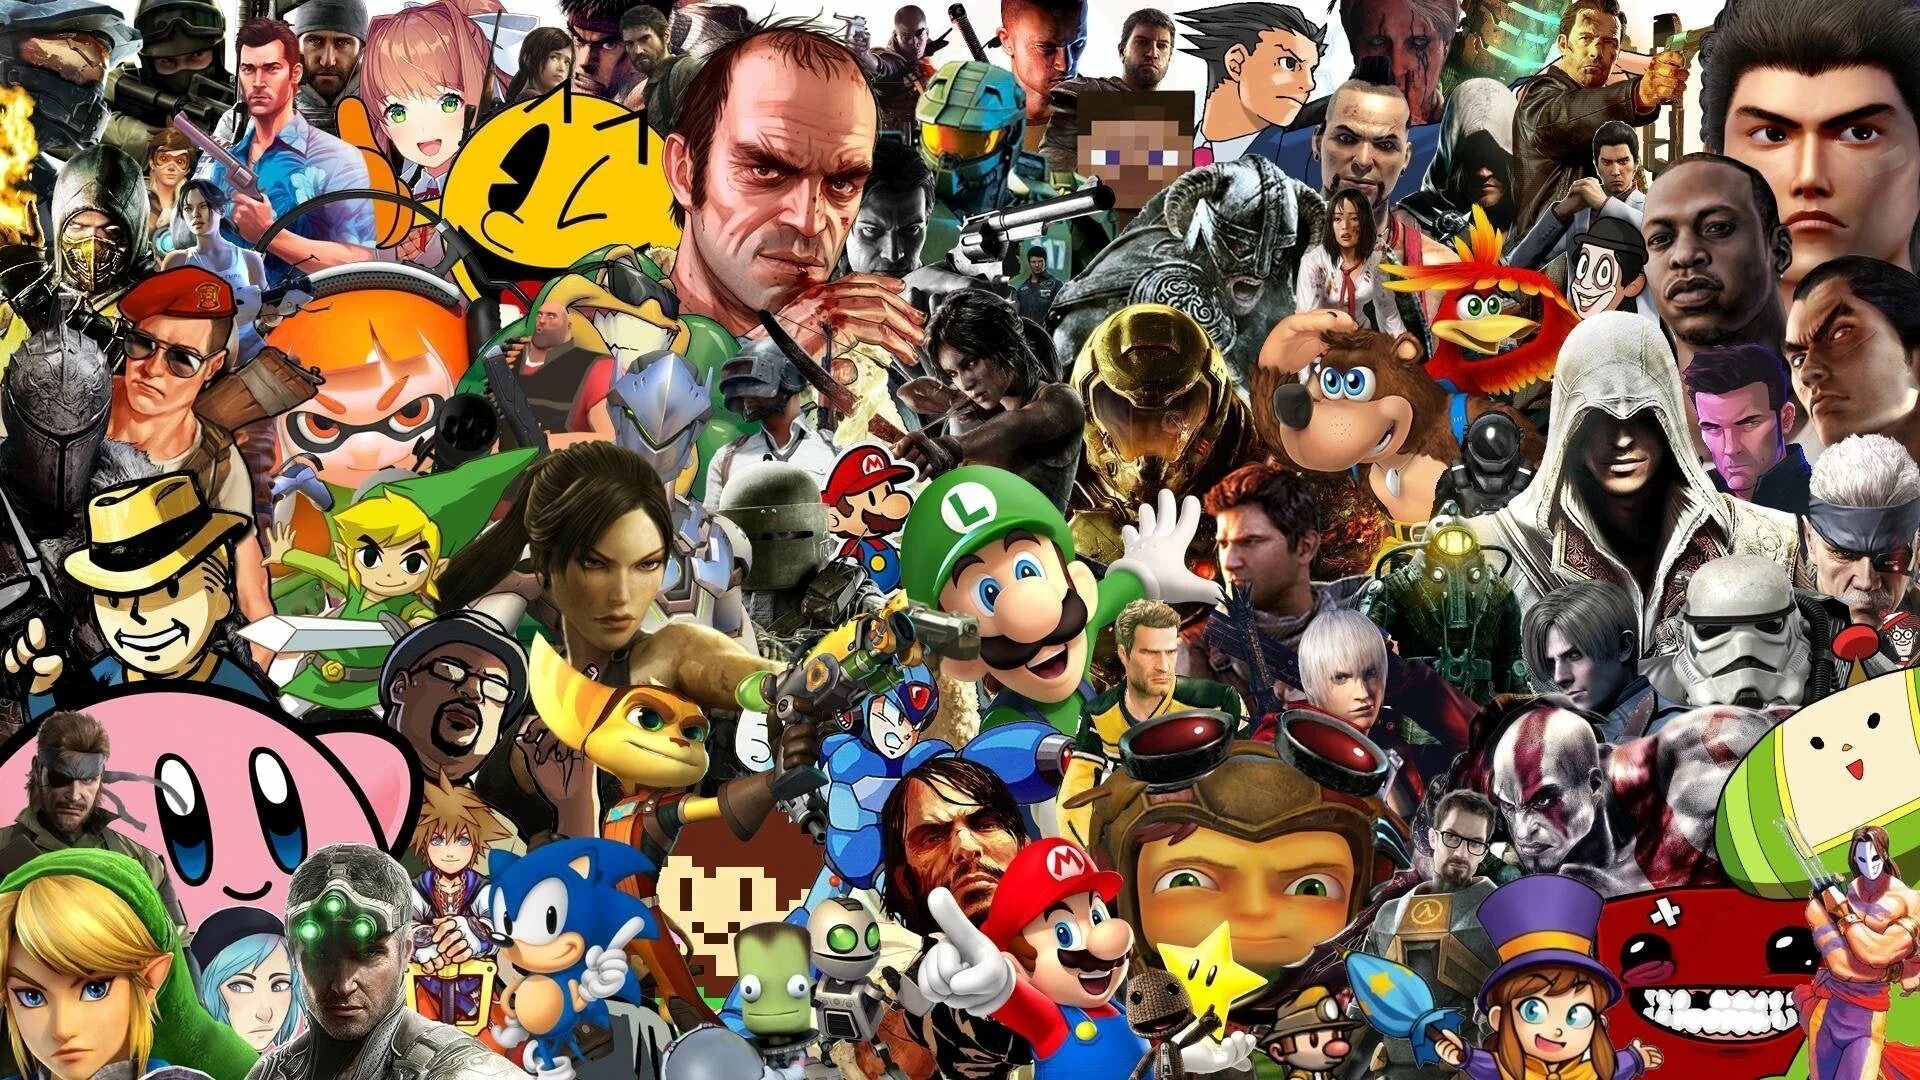 Игру где много игр в 1. Популярные персонажи. Персонажи игр. Разные персонажи. Персонажи из разных игр.